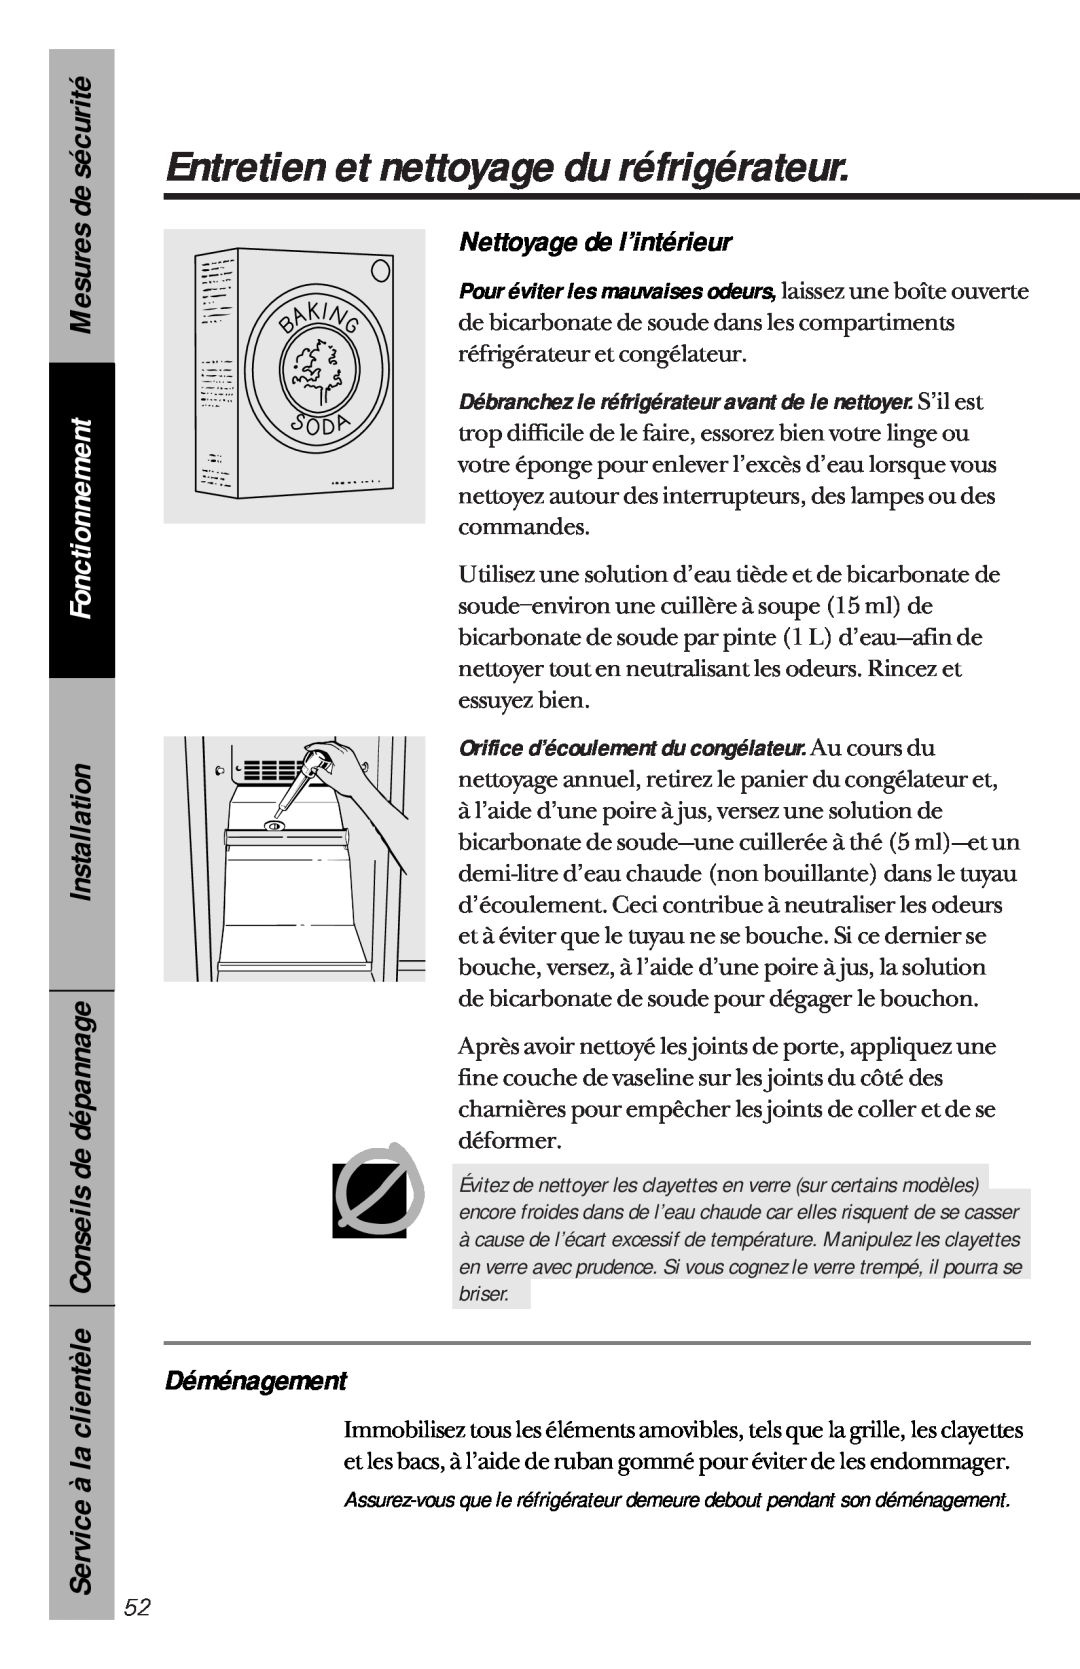 GE 162D3941P005 owner manual Nettoyage de l’intérieur, Déménagement, Entretien et nettoyage du réfrigérateur 